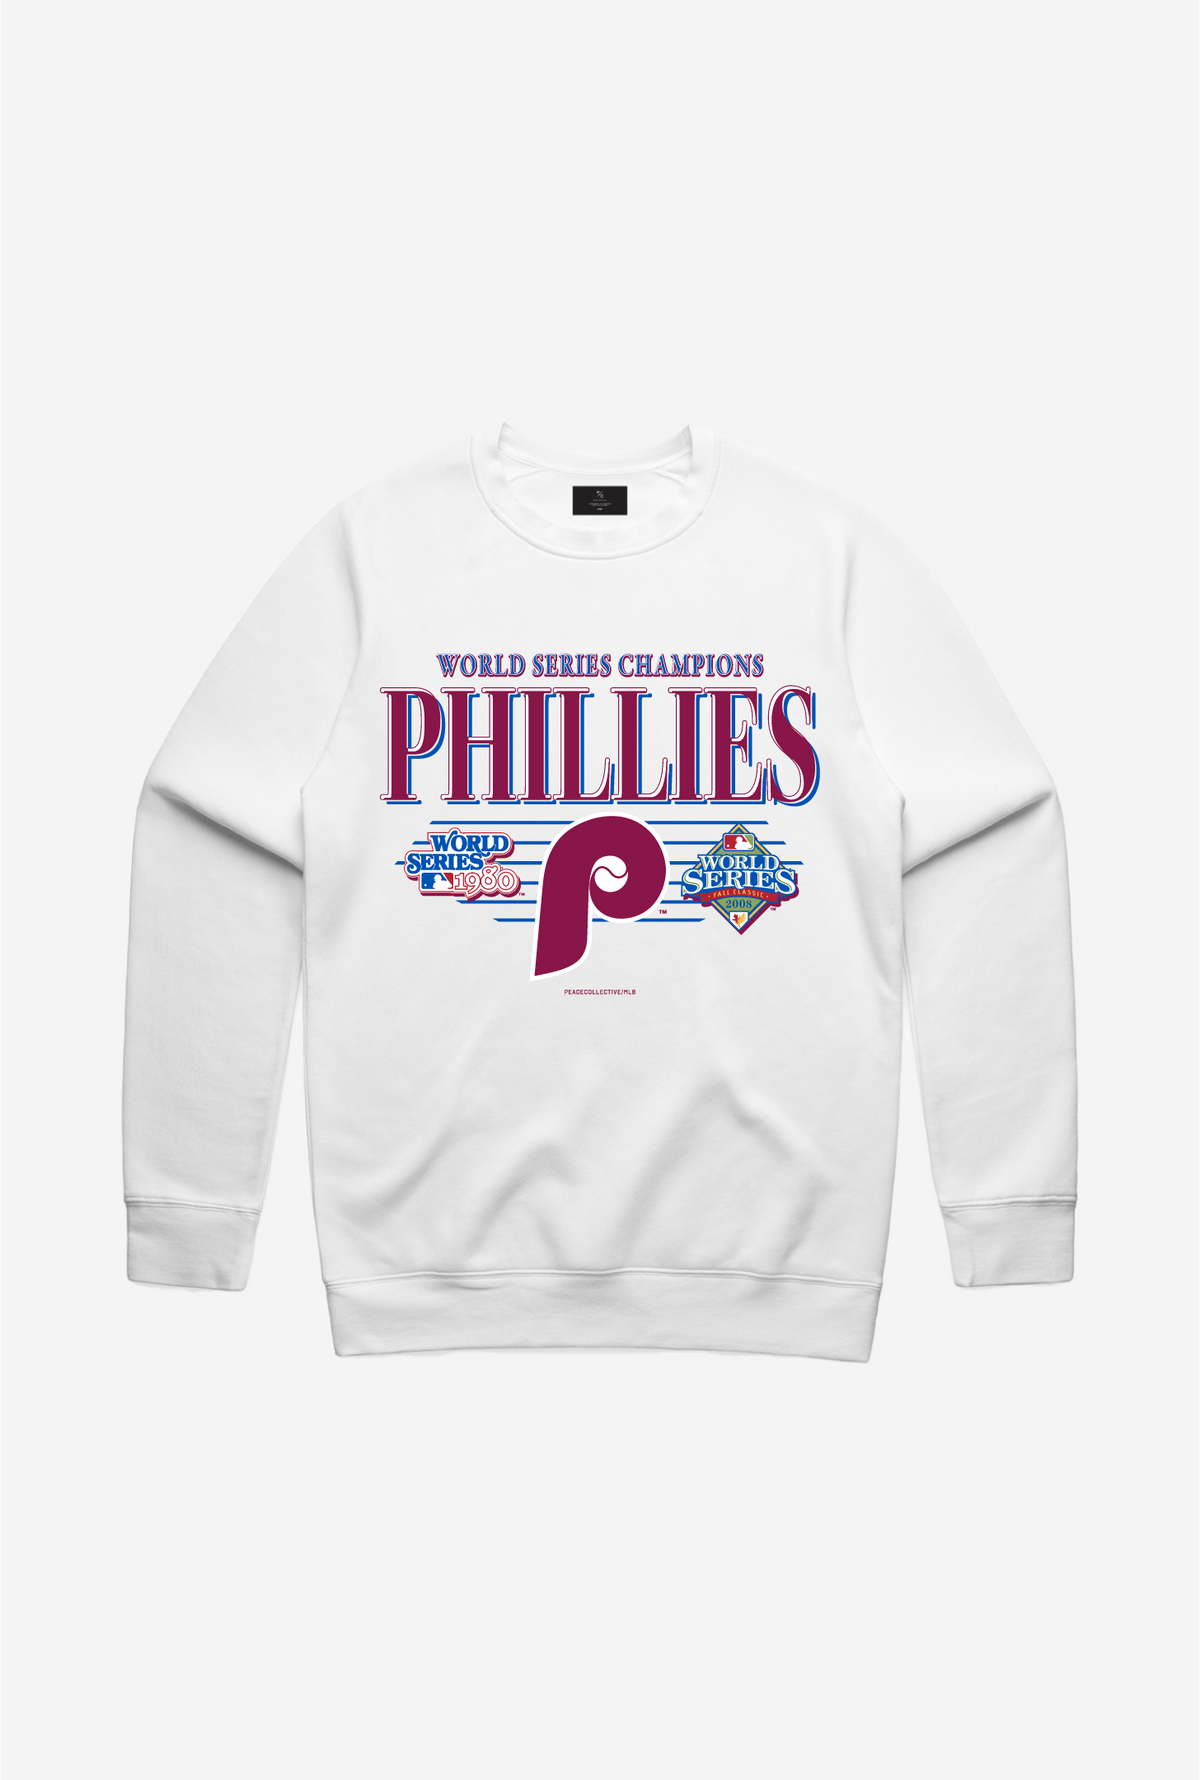 Philadelphia Phillies Throwback Crewneck - White